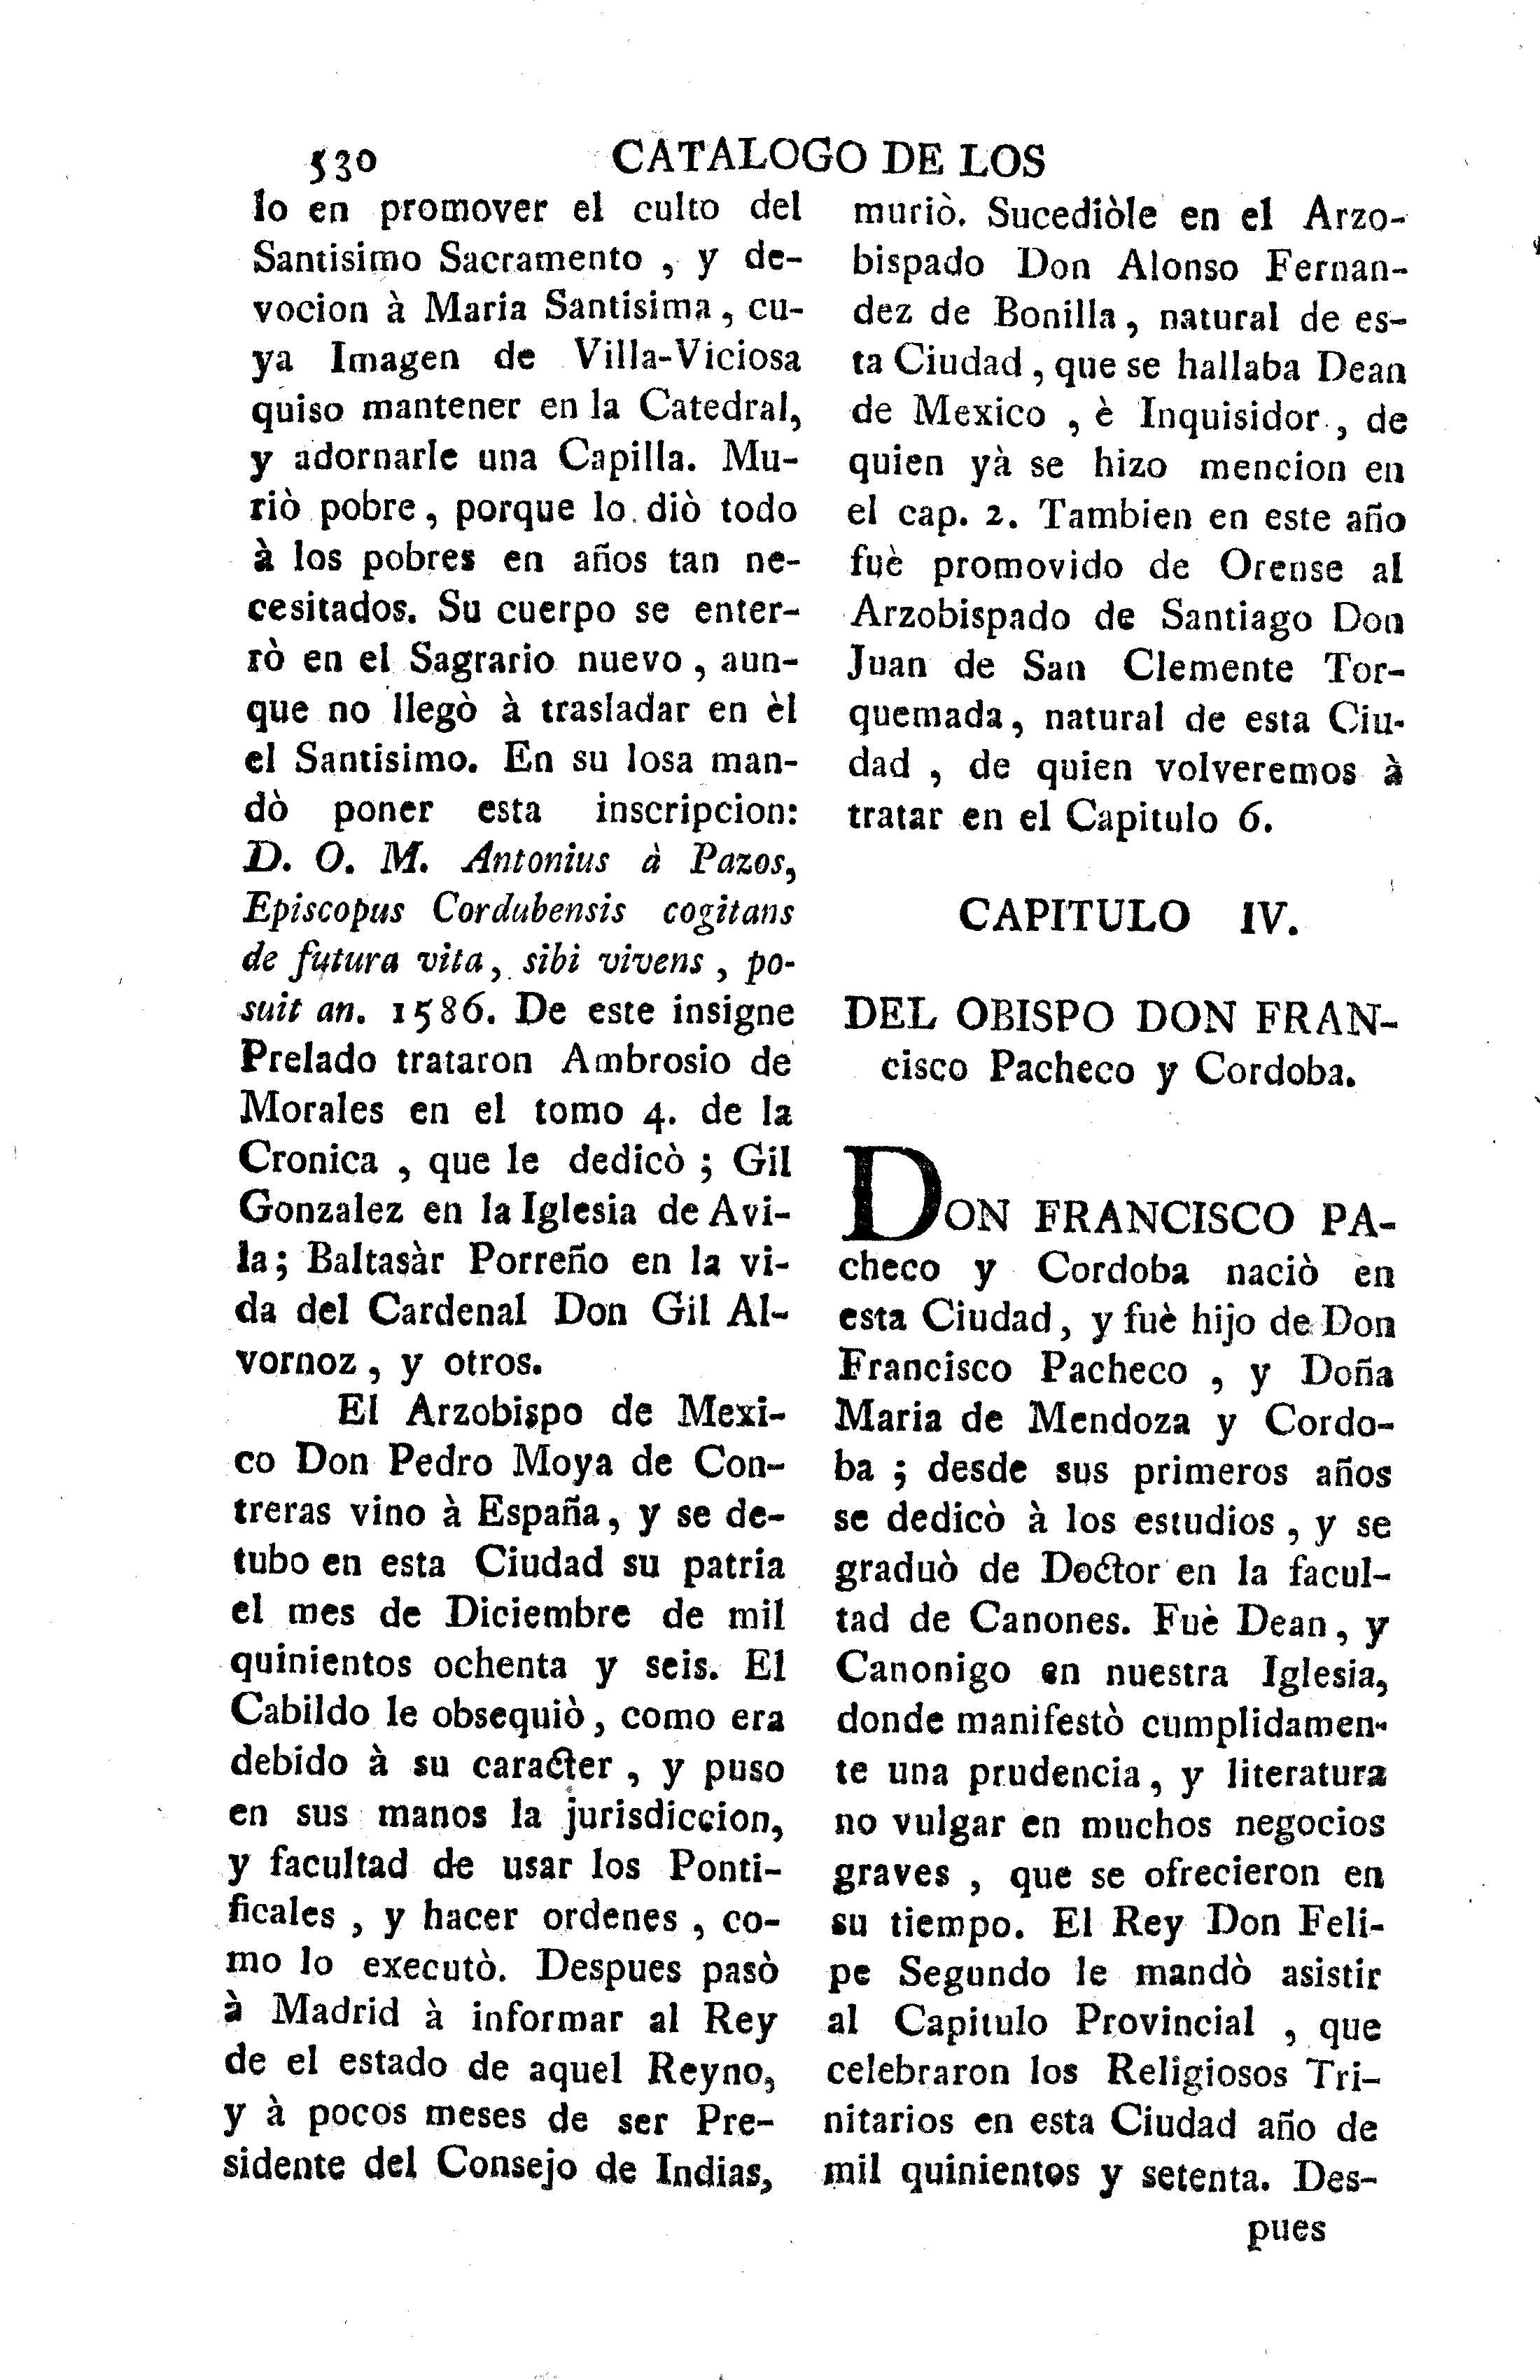 Capitulo IV. Del Obispo Don Francisco Pacheco y Cordoba